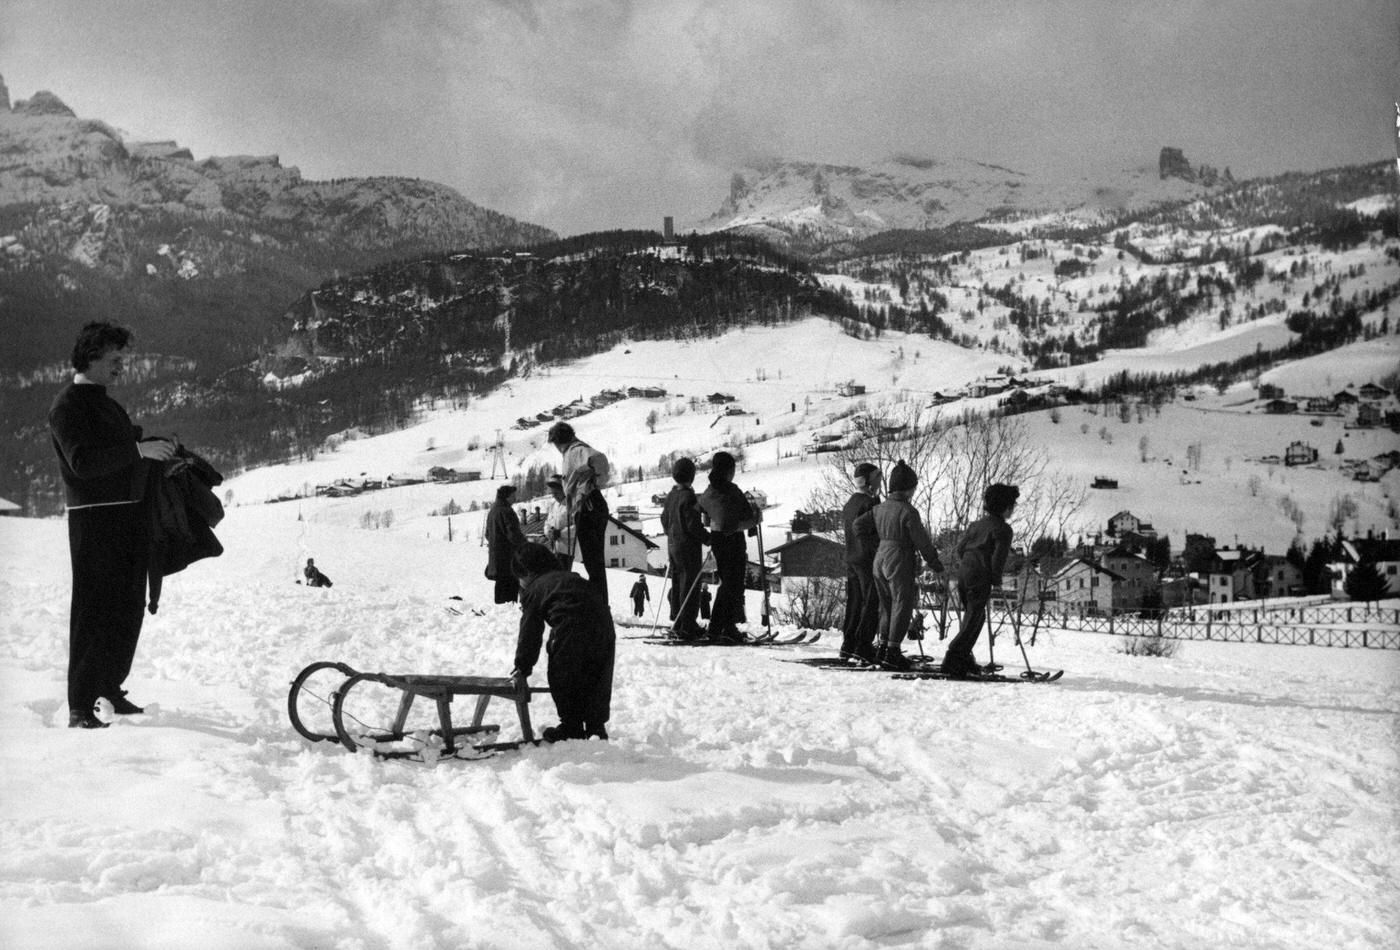 Some children learn to ski. Cortina d'Ampezzo, March 1954